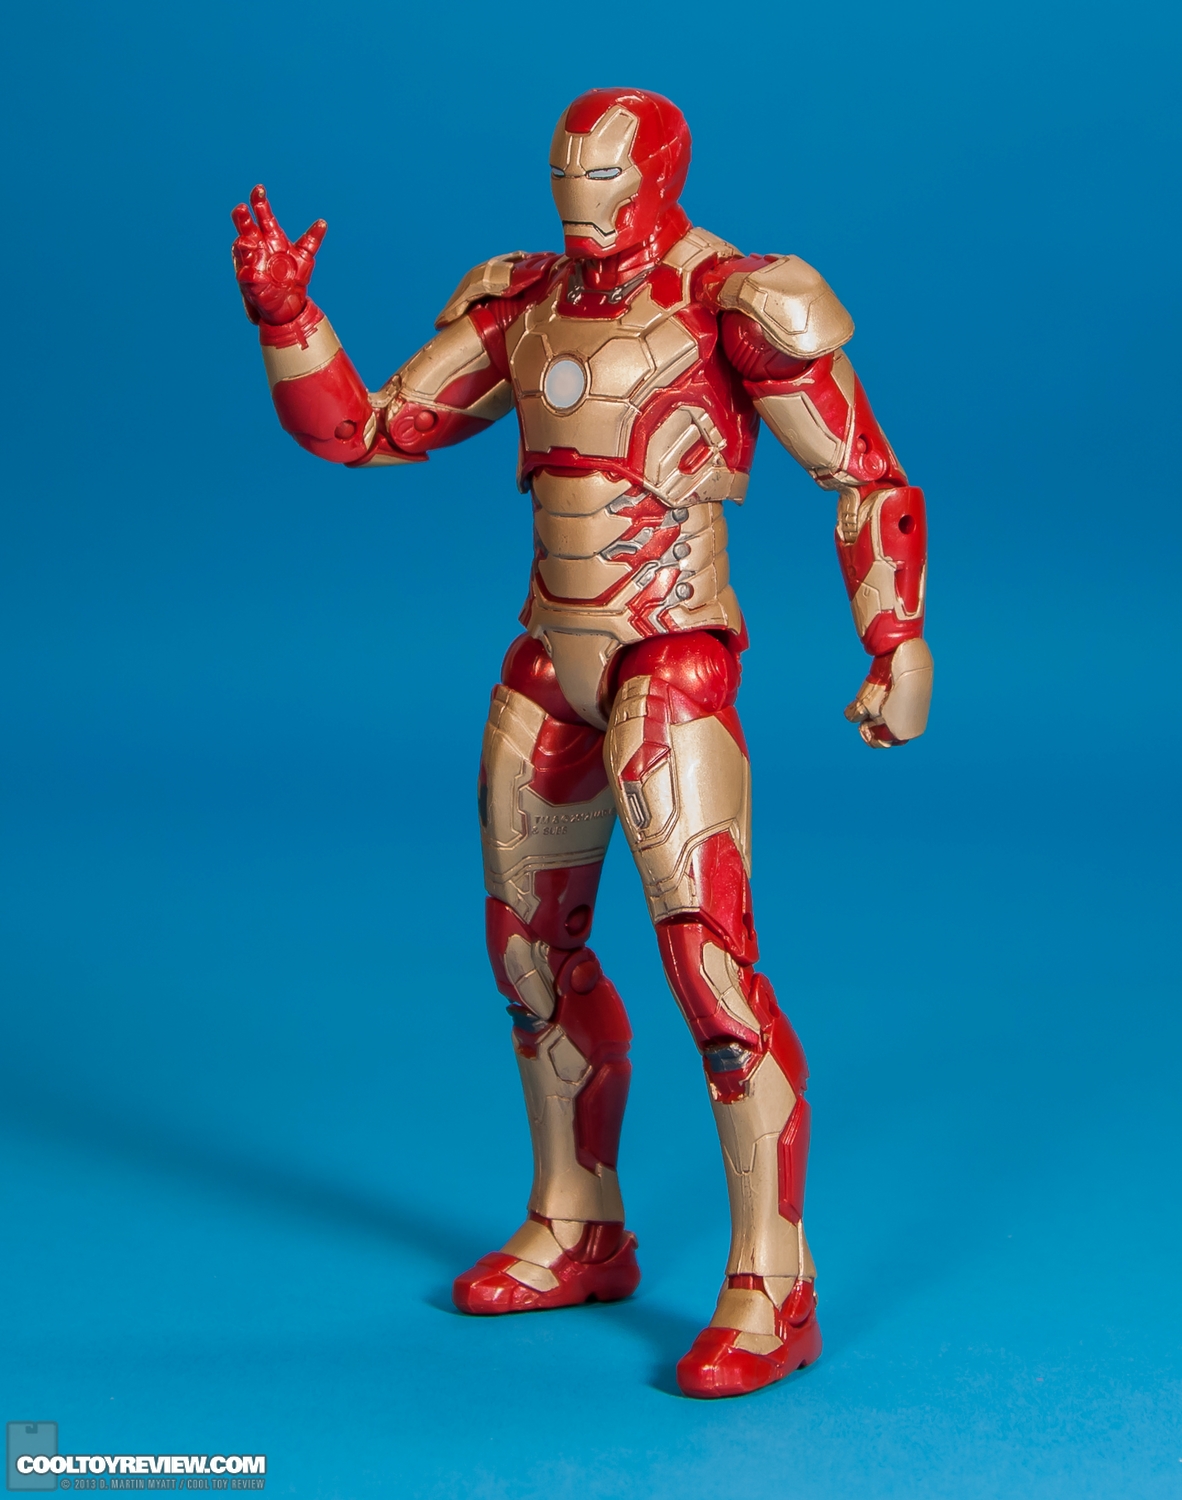 Iron-Man-Mark-42-Marvel-Legends-Iron-Monger-Series-003.jpg